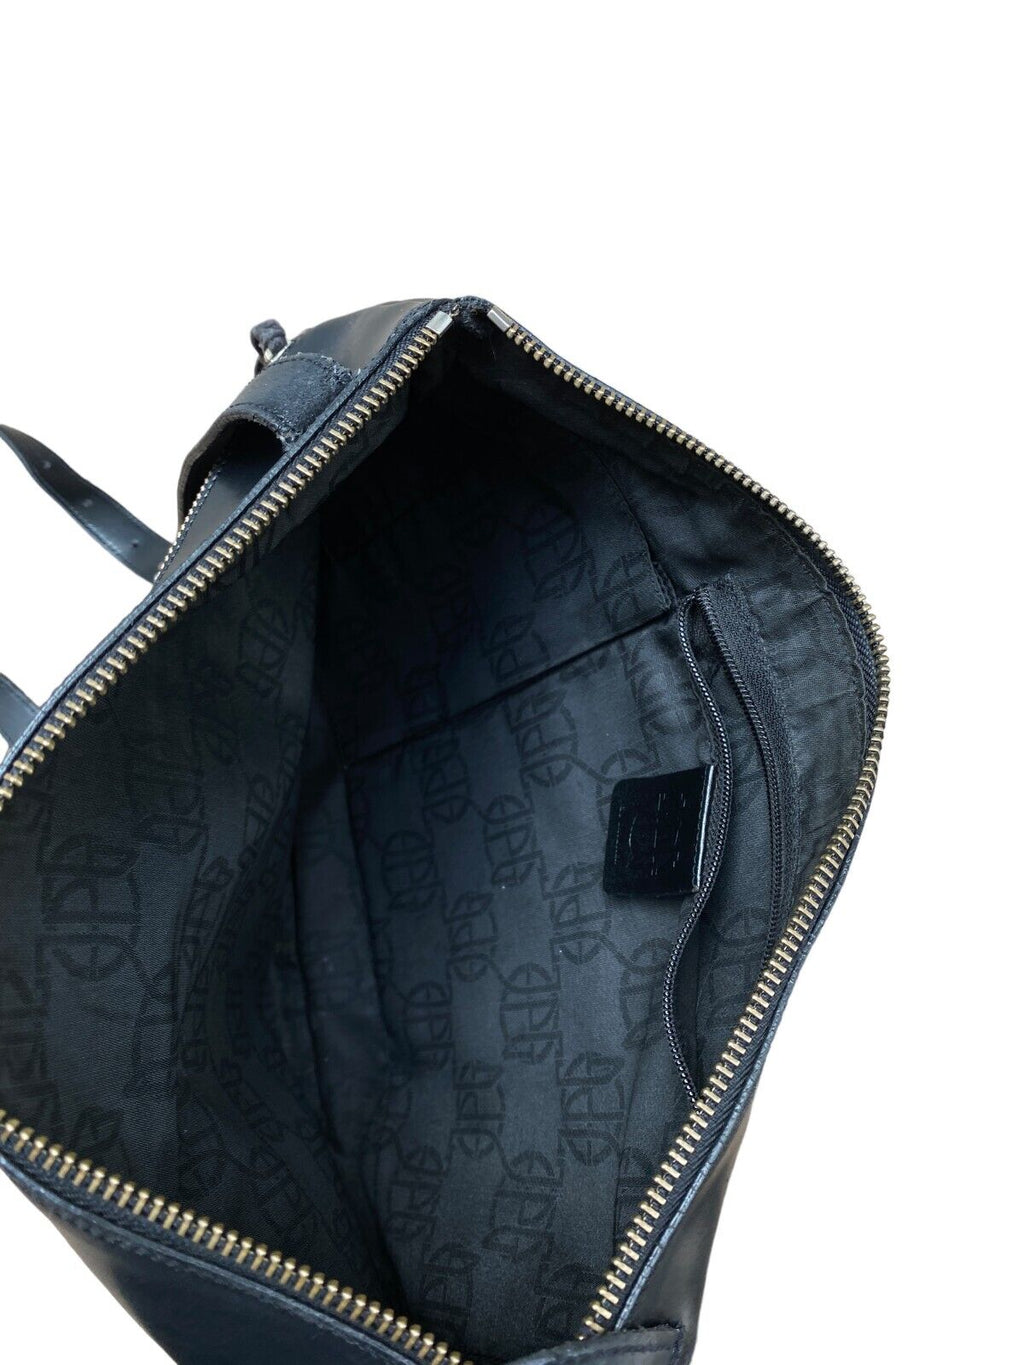 JPG Vintage Black Leather Shoulder Bag